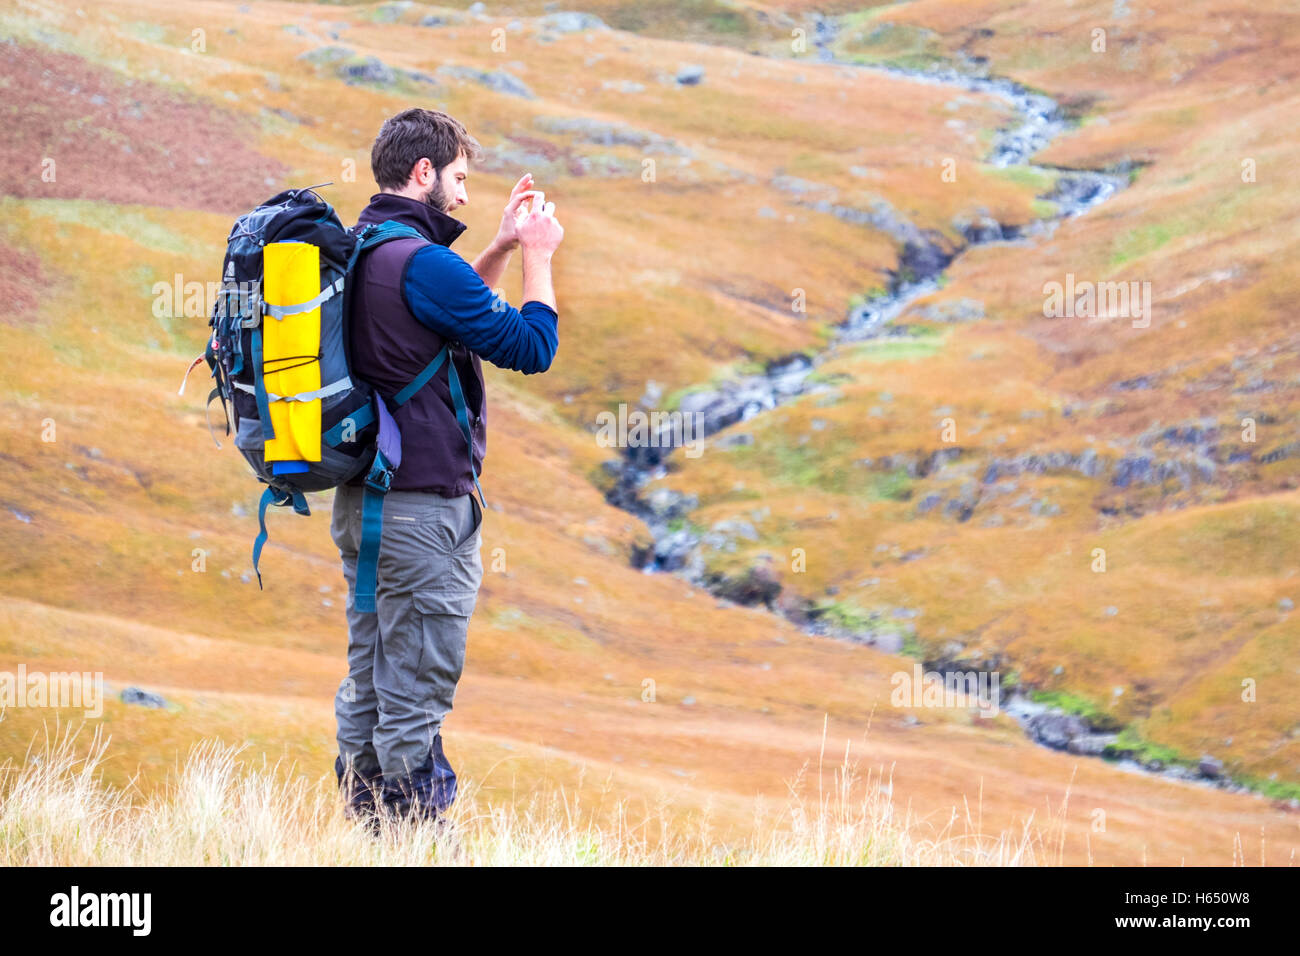 Maschio nella sua metà anni venti passeggiata in collina nel distretto del lago, prendendo una foto con uno smart phone Foto Stock